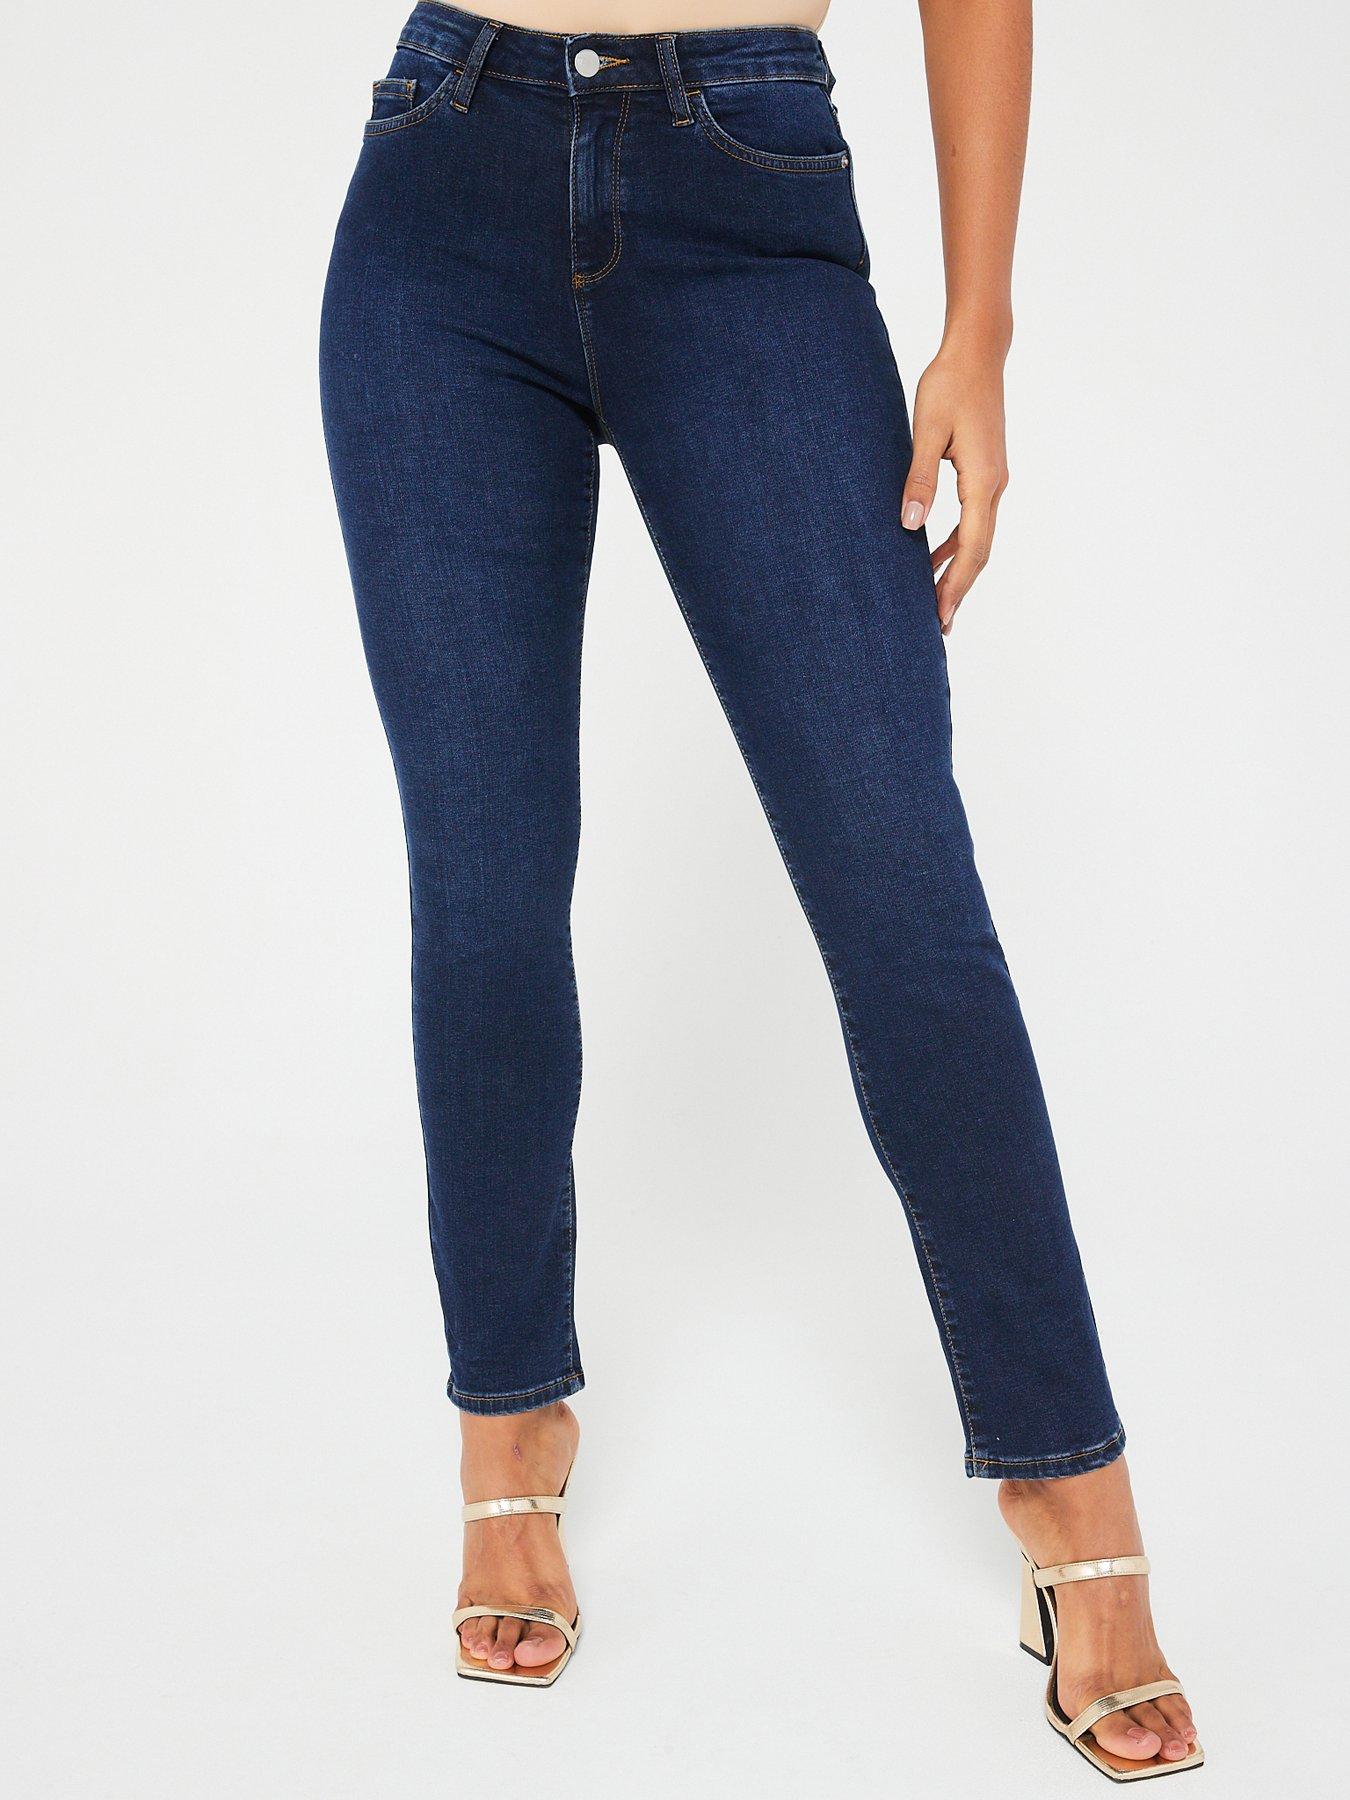 Slim Jeans, Jeans, Women